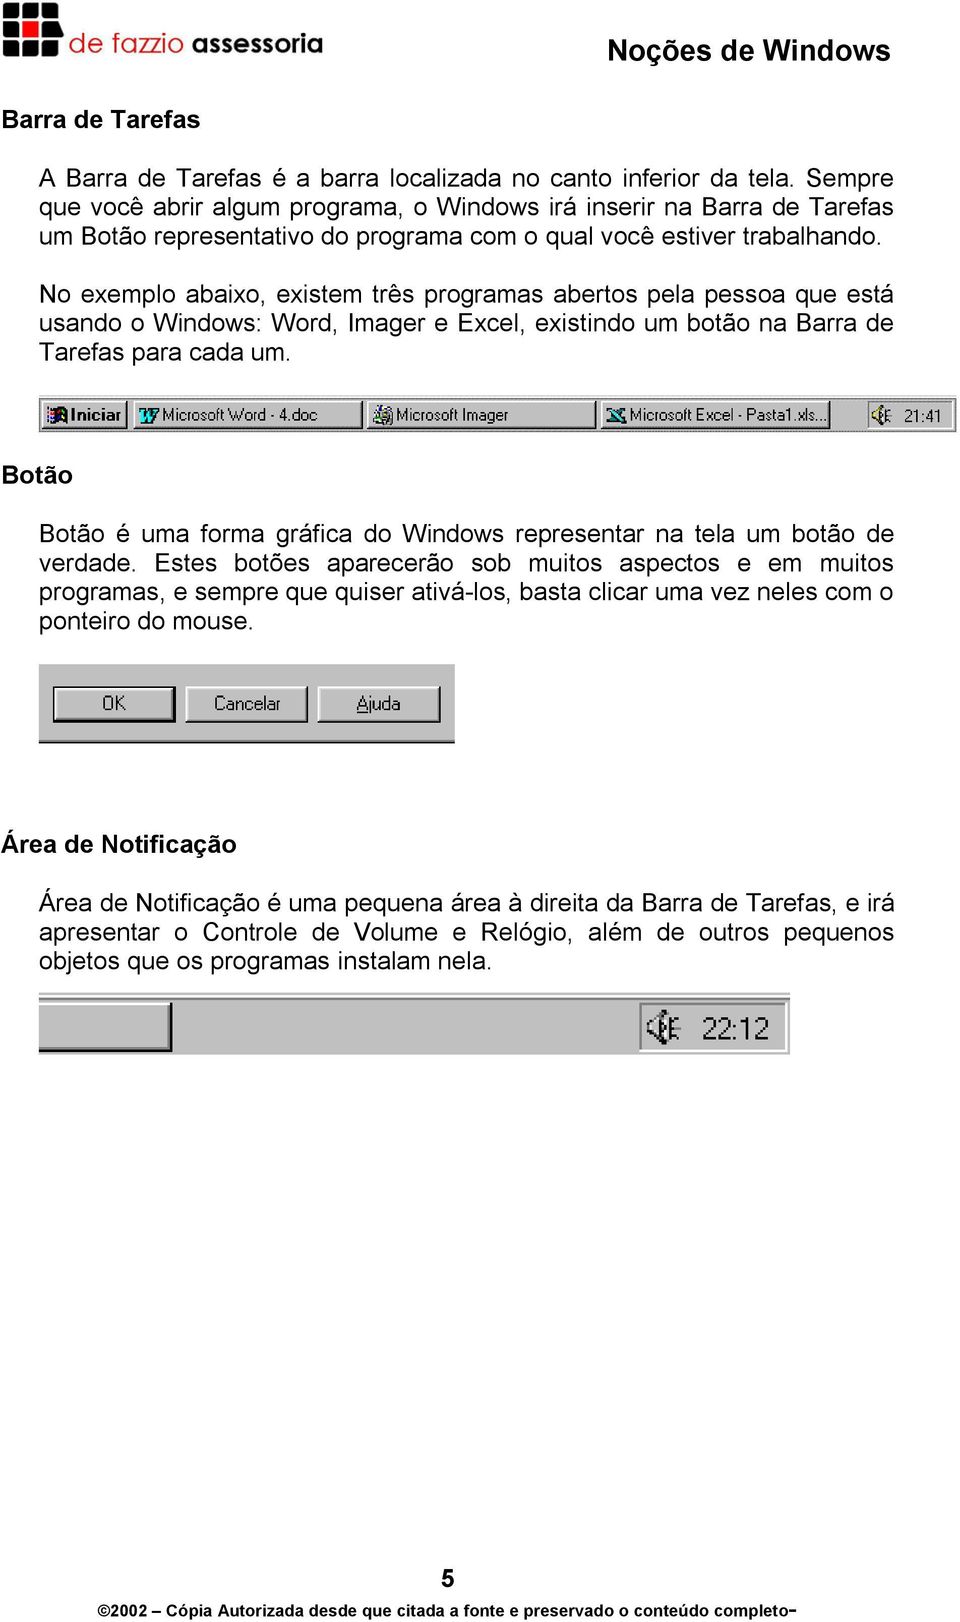 No exemplo abaixo, existem três programas abertos pela pessoa que está usando o Windows: Word, Imager e Excel, existindo um botão na Barra de Tarefas para cada um.